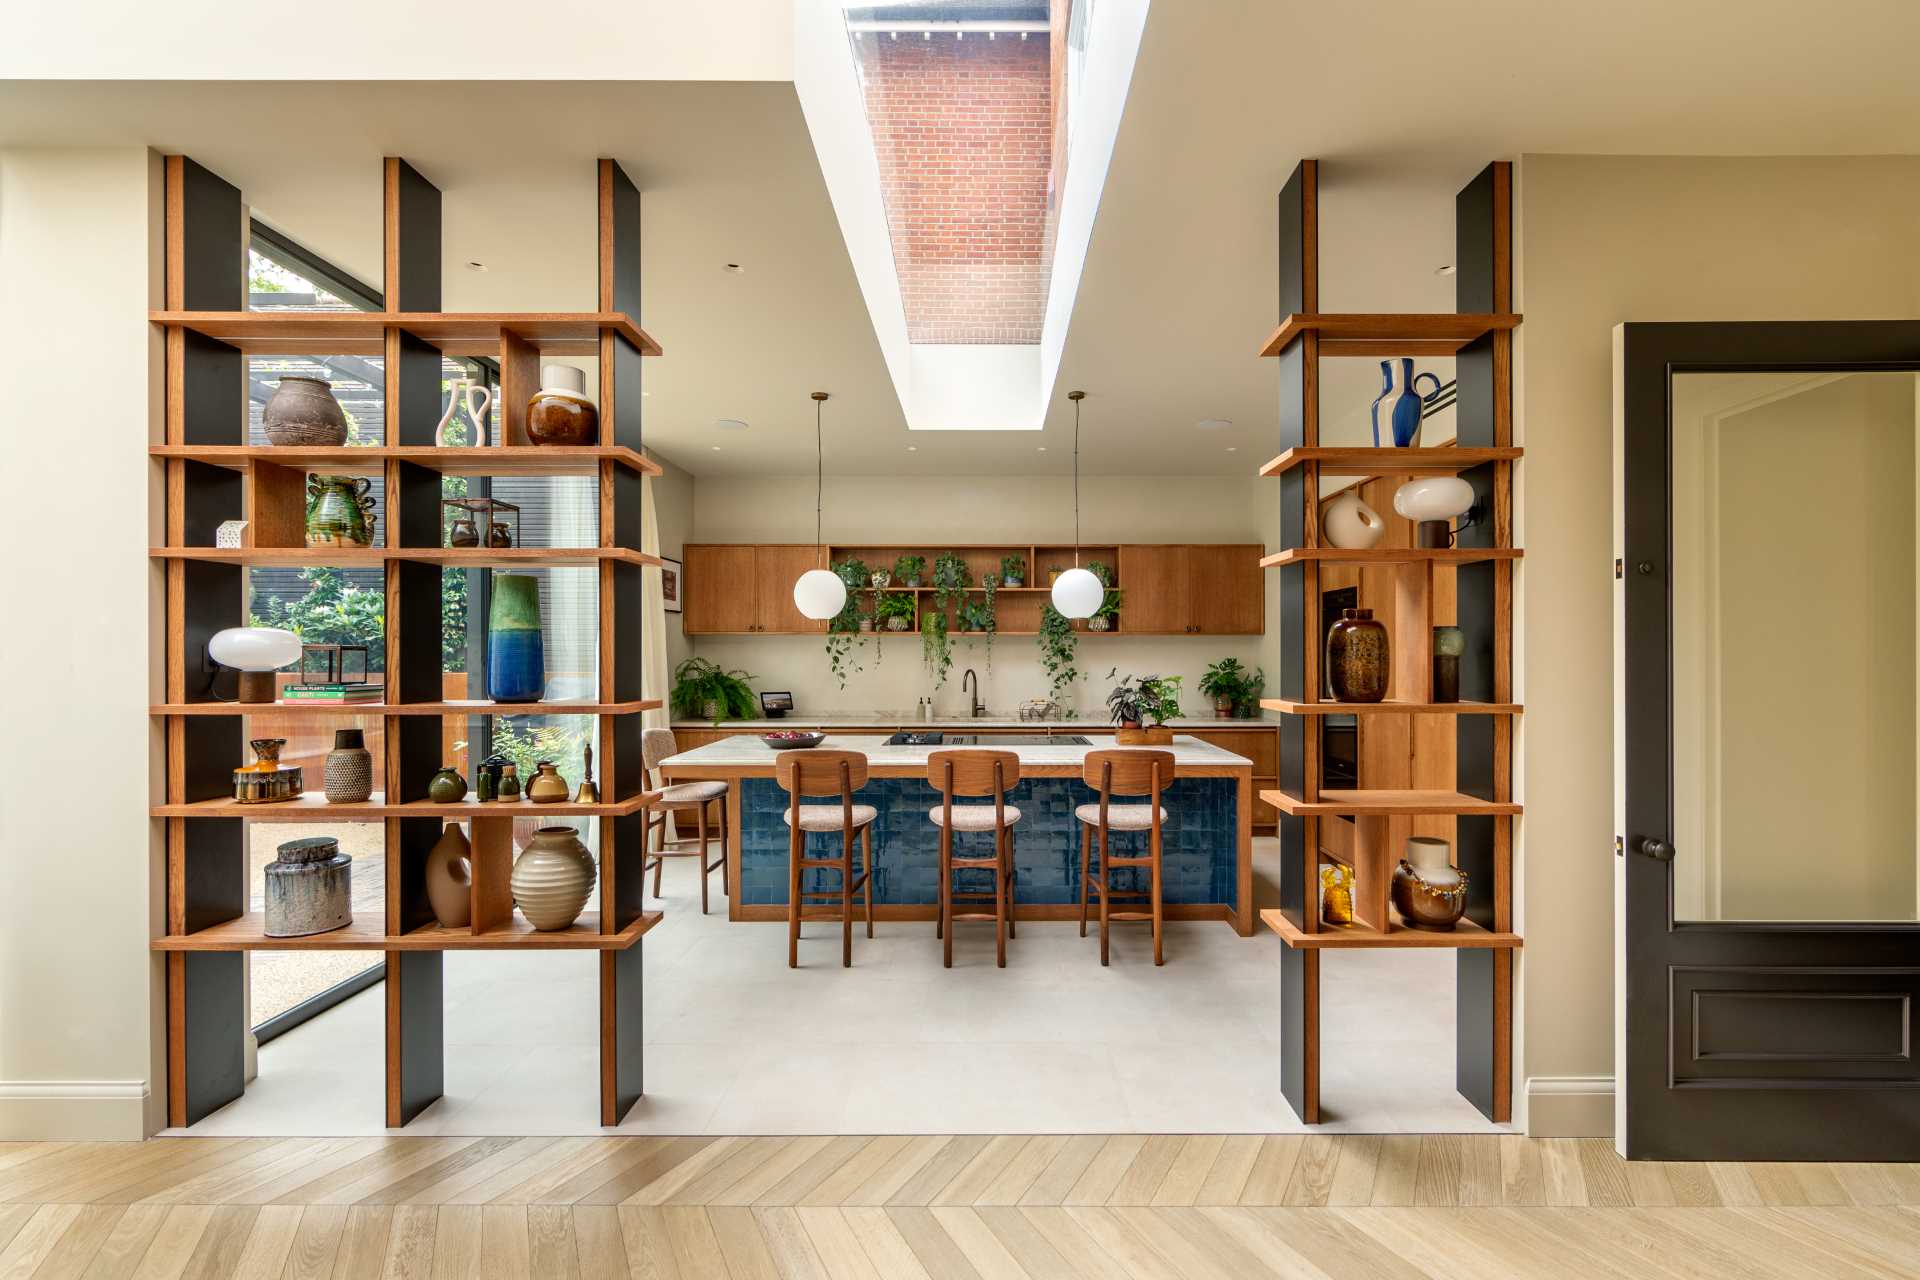 این اتاق ناهار خوری دارای منظره ای از آشپزخانه است، در حالی که قفسه های کتاب از کف تا سقف یک ورودی برای آشپزخانه ایجاد می کند.